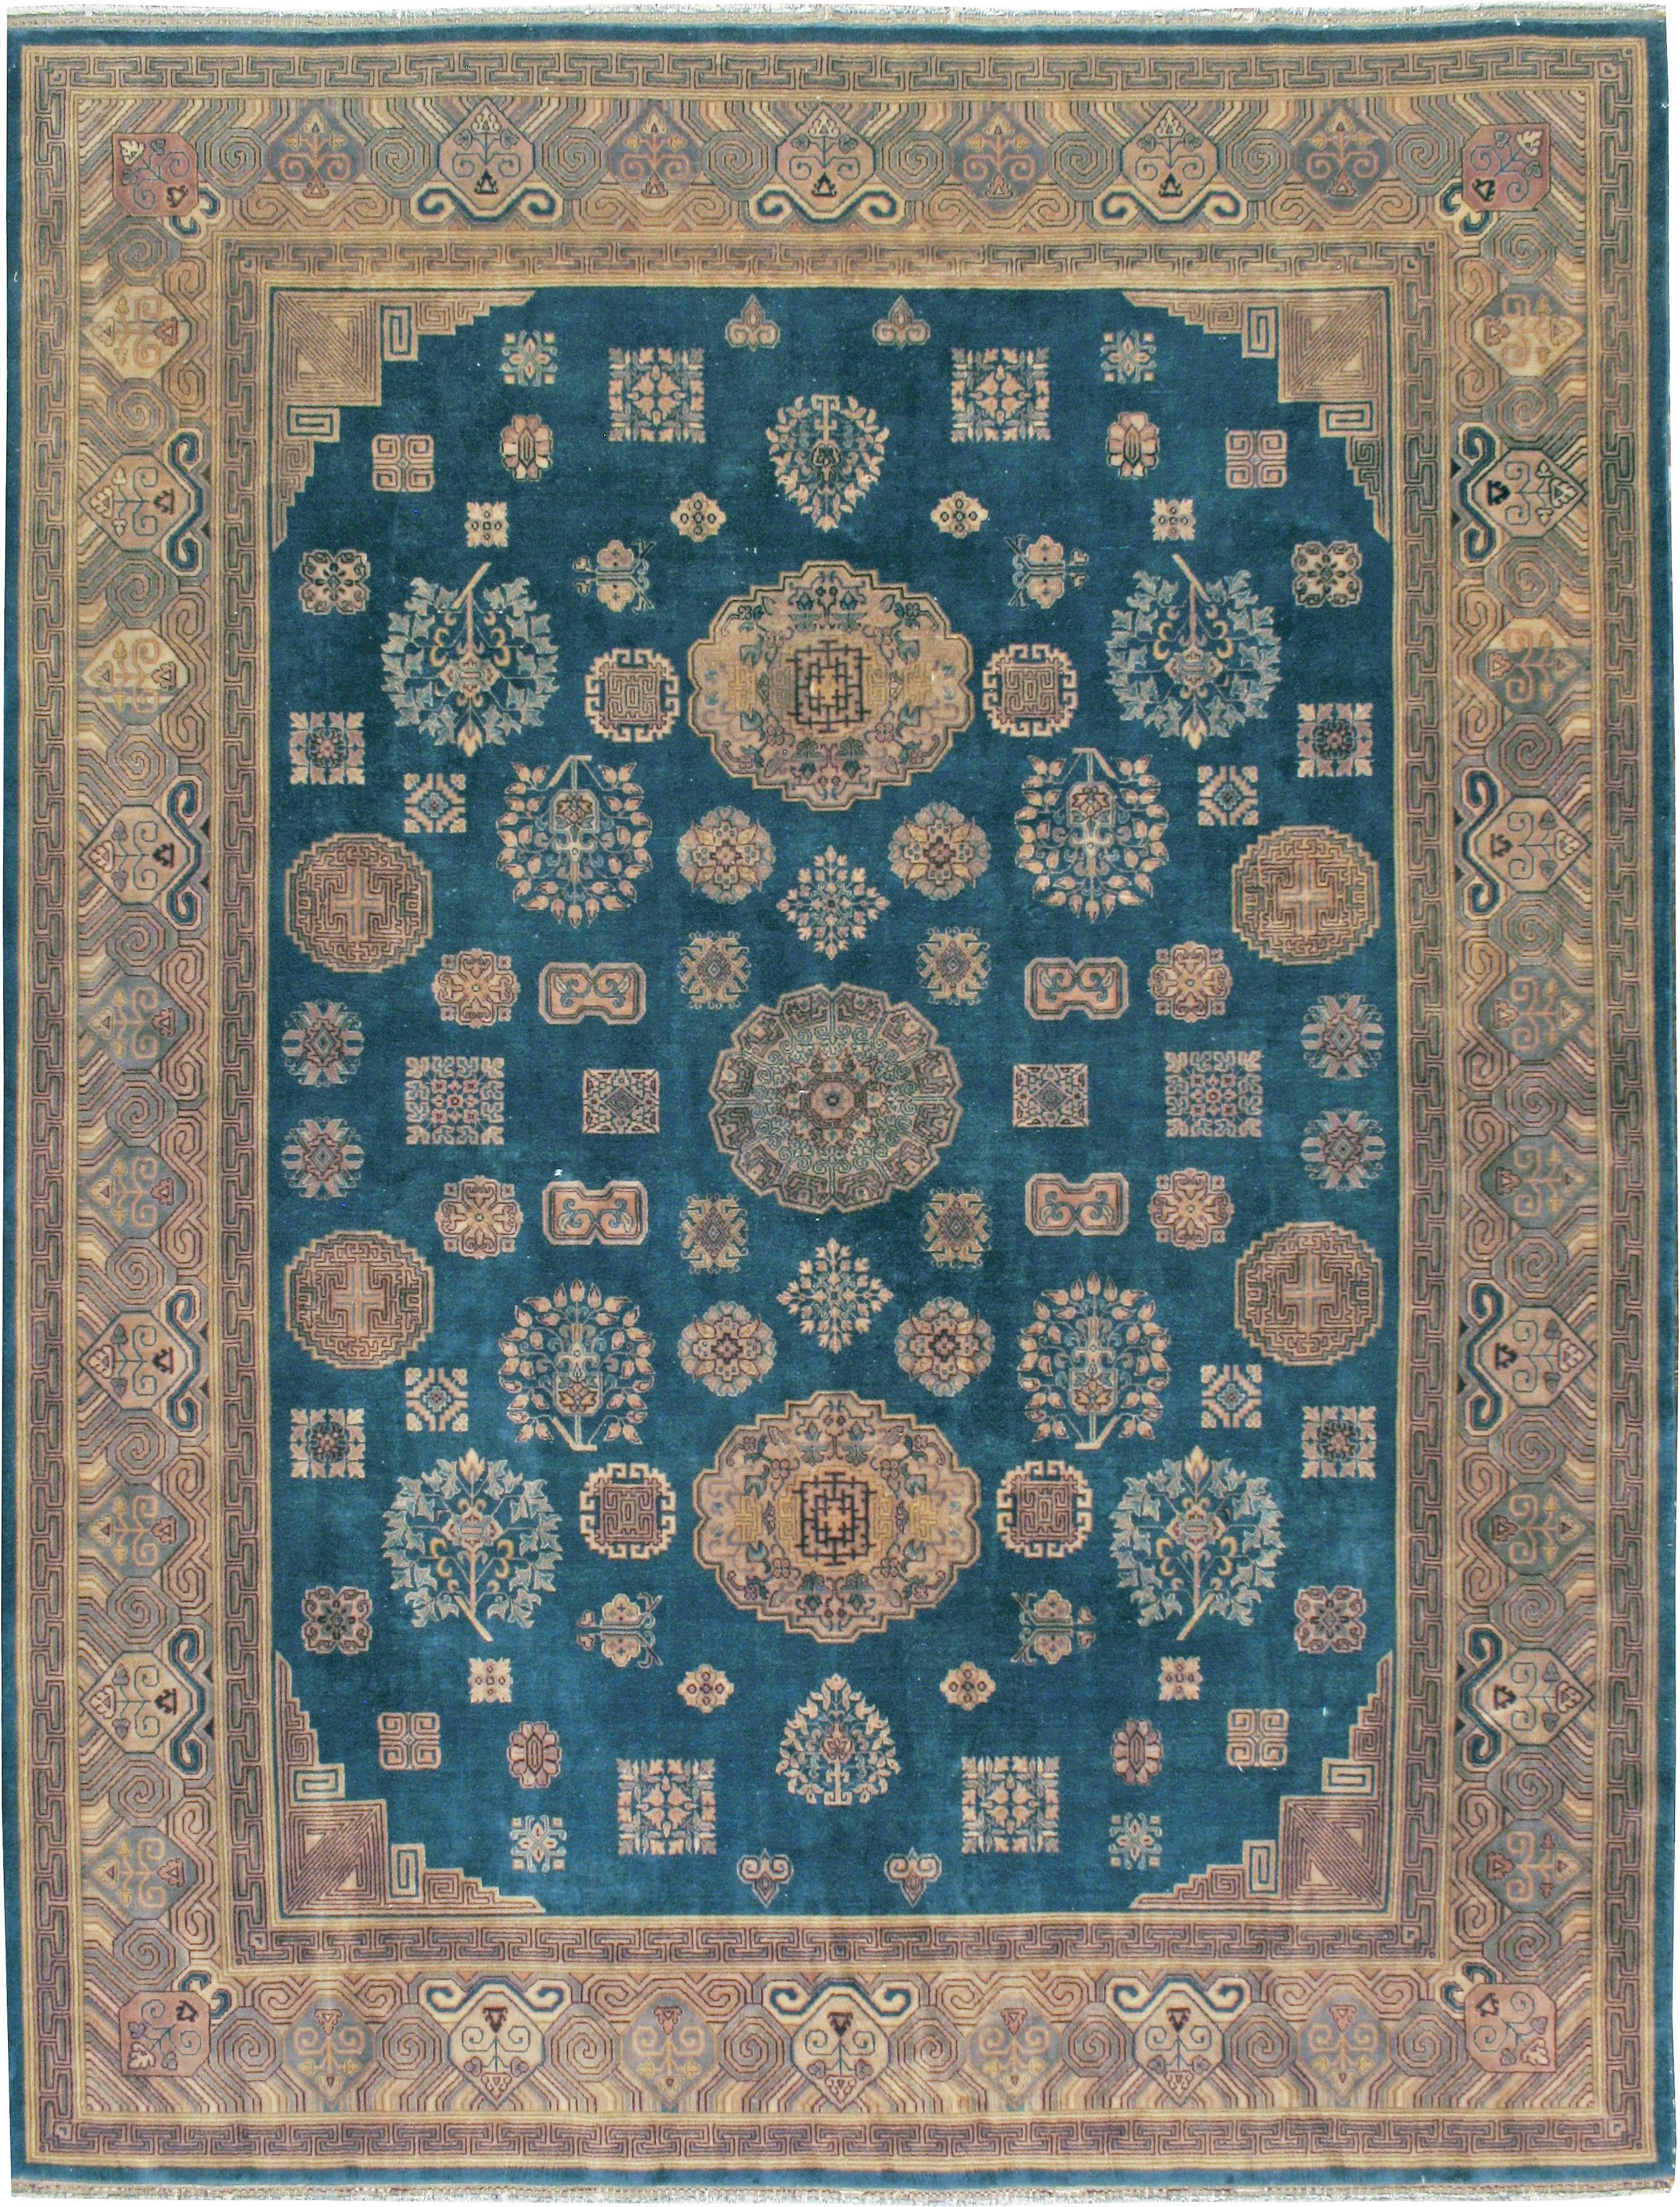 Tapis chinois vintage avec un motif Khotan du deuxième quart du 20e siècle.

Mesures : 9' 0